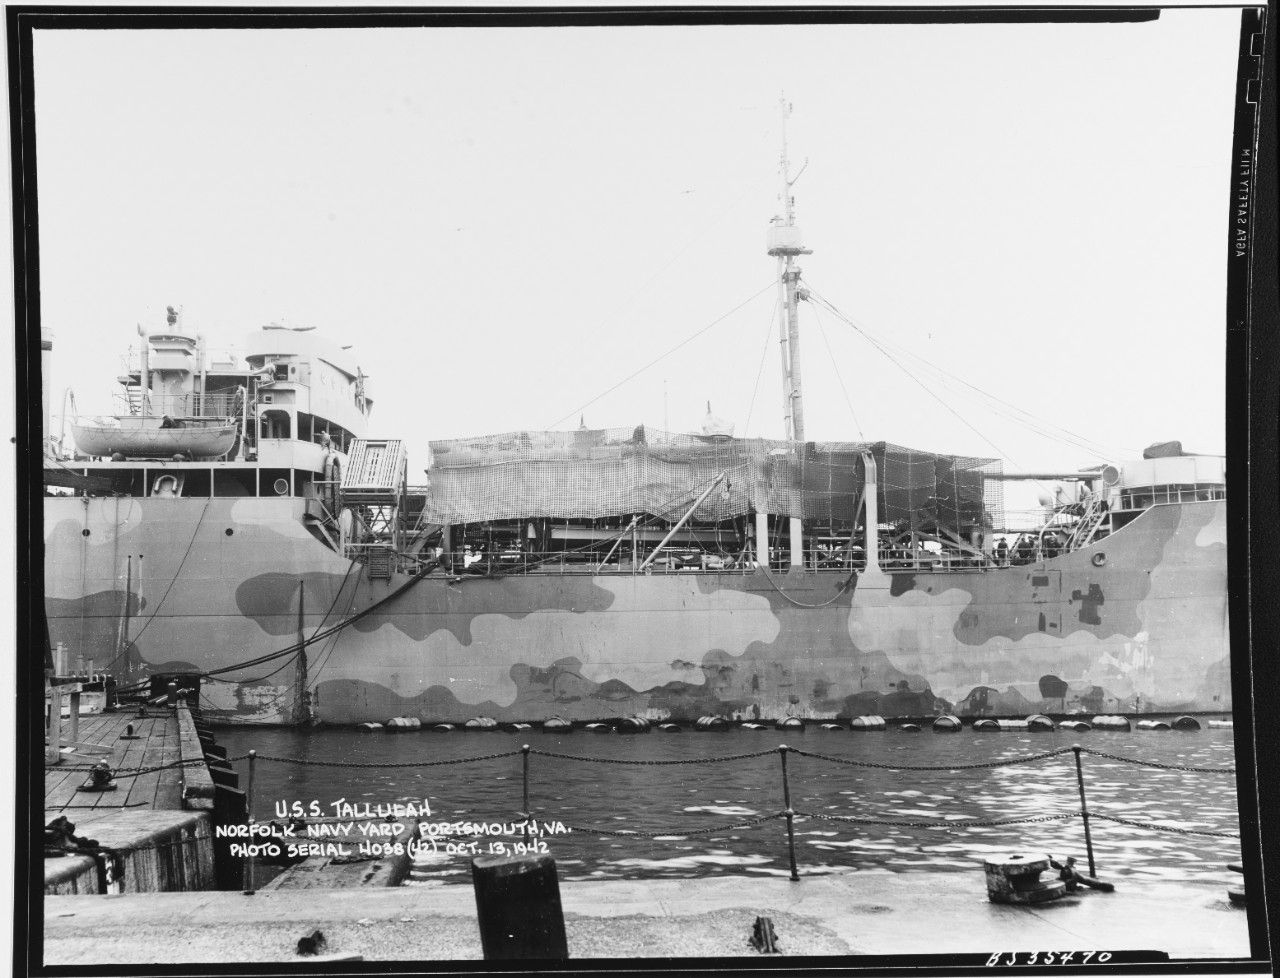 USS TALLULAH (AO-50)